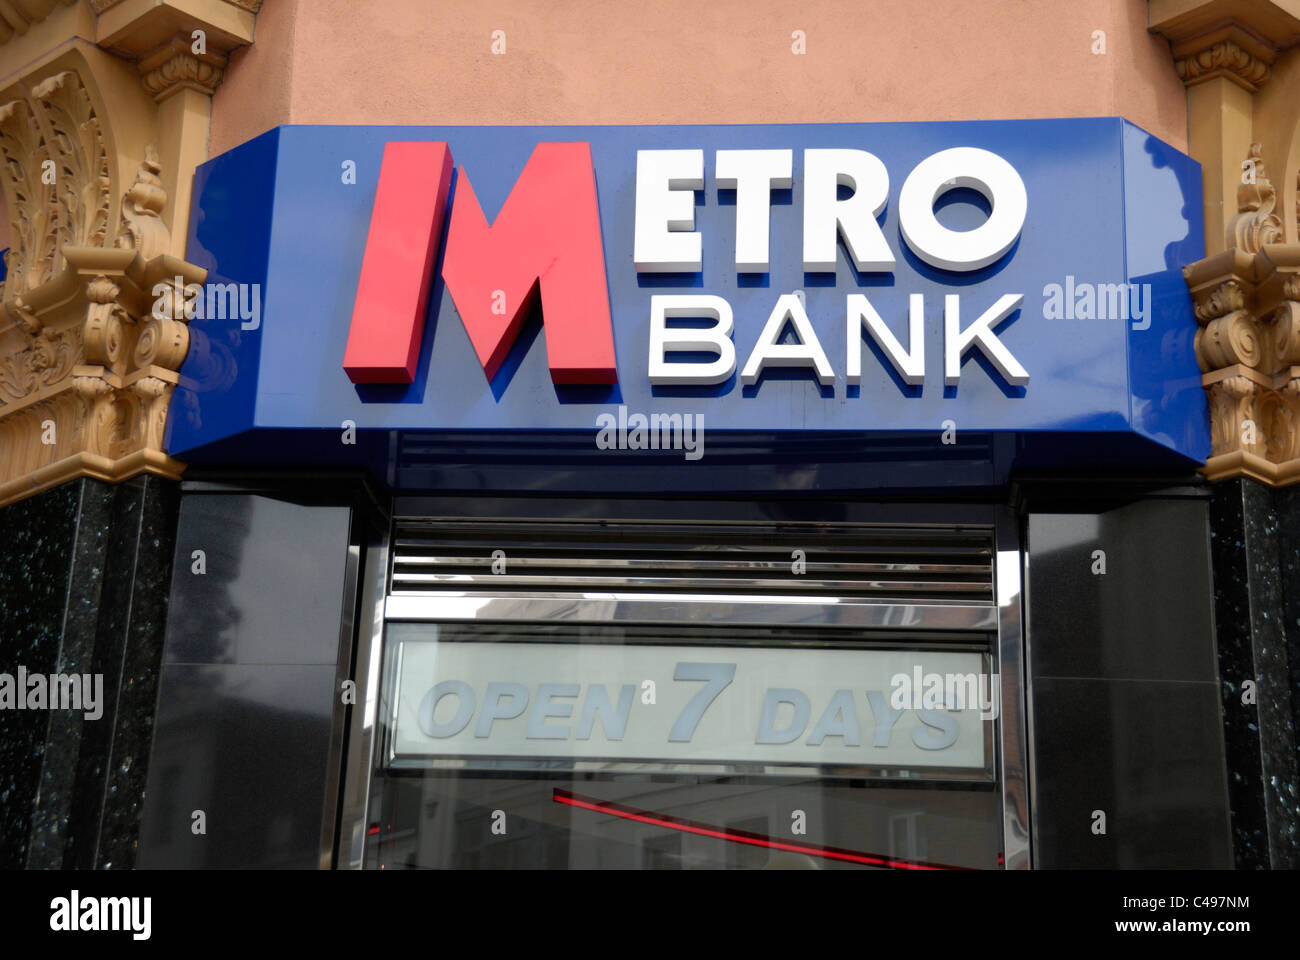 Metro Bank, ouvert 7 jours par semaine, Londres, Angleterre Banque D'Images